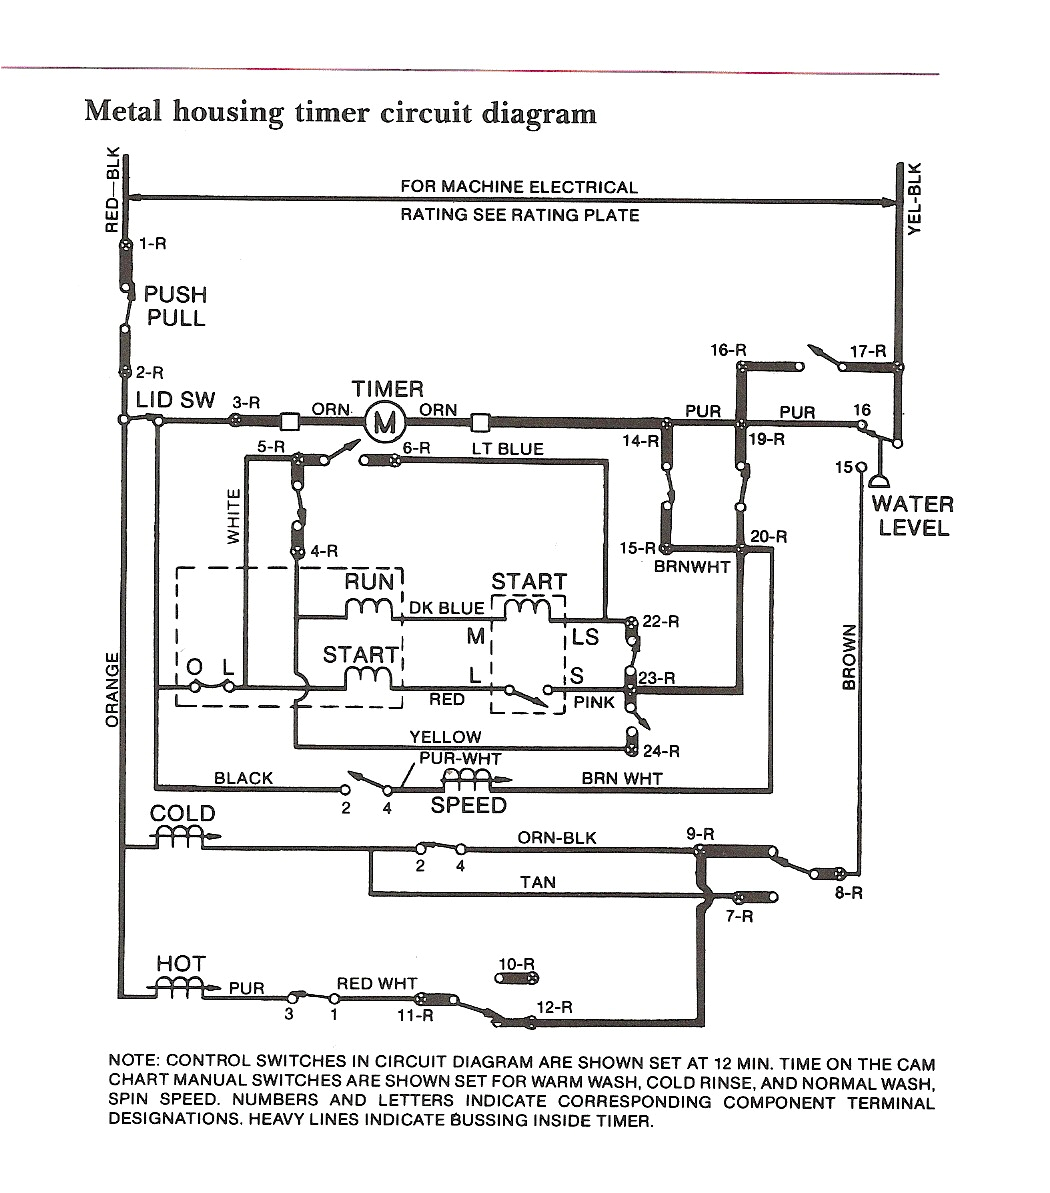 general electric washing machine motor wiring diagram wiring general electric motor wiring color code free download wiring